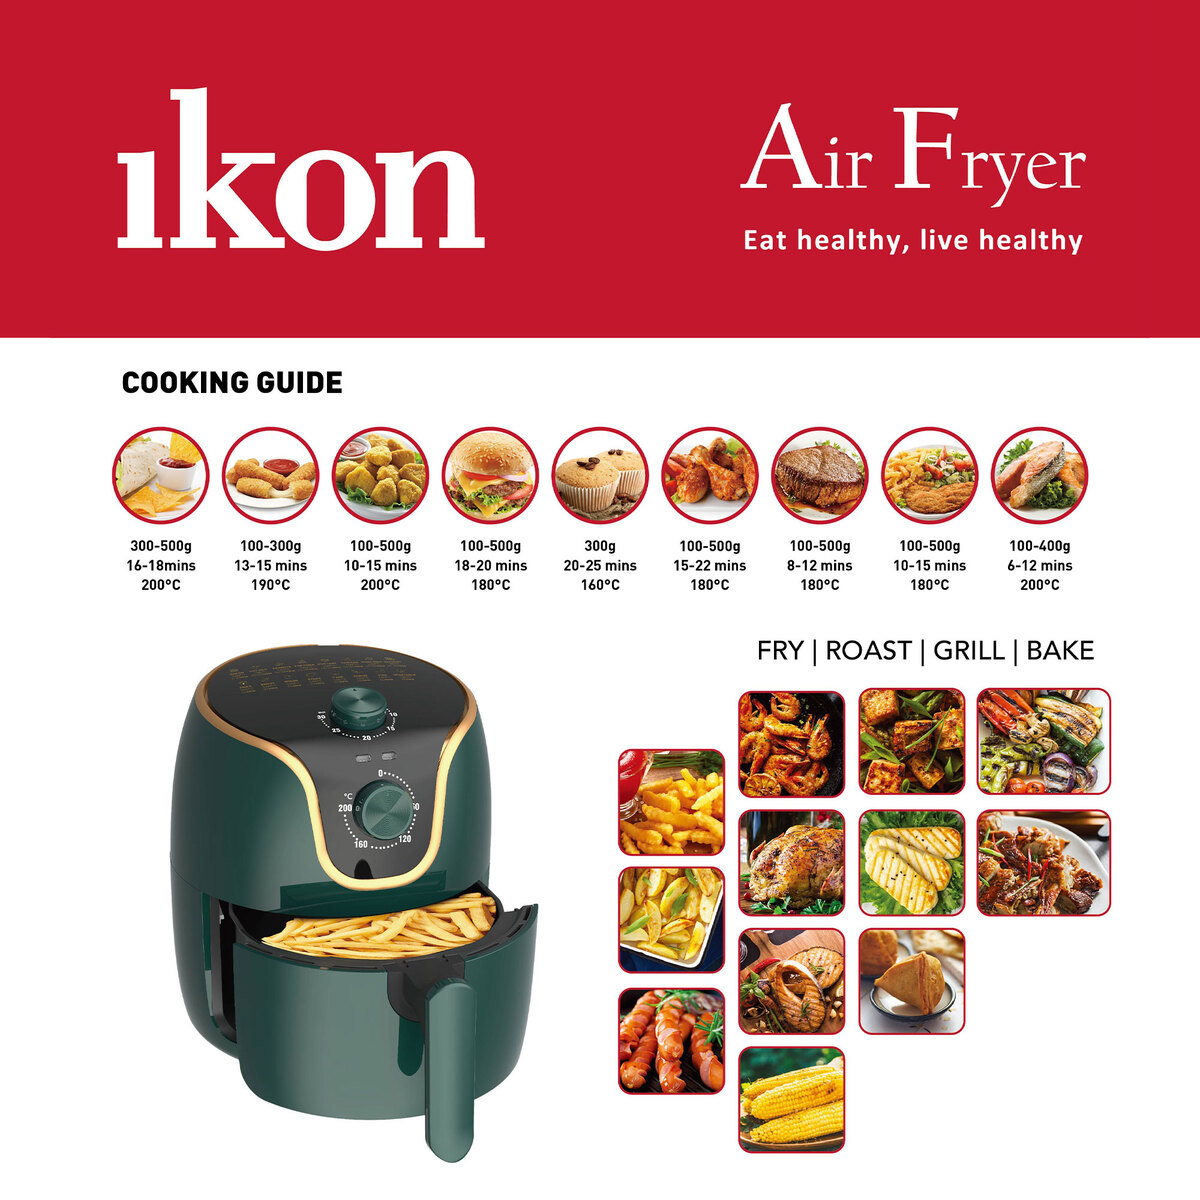 Ikon Air Fryer, 3.5 L, Green, IK-AF303T